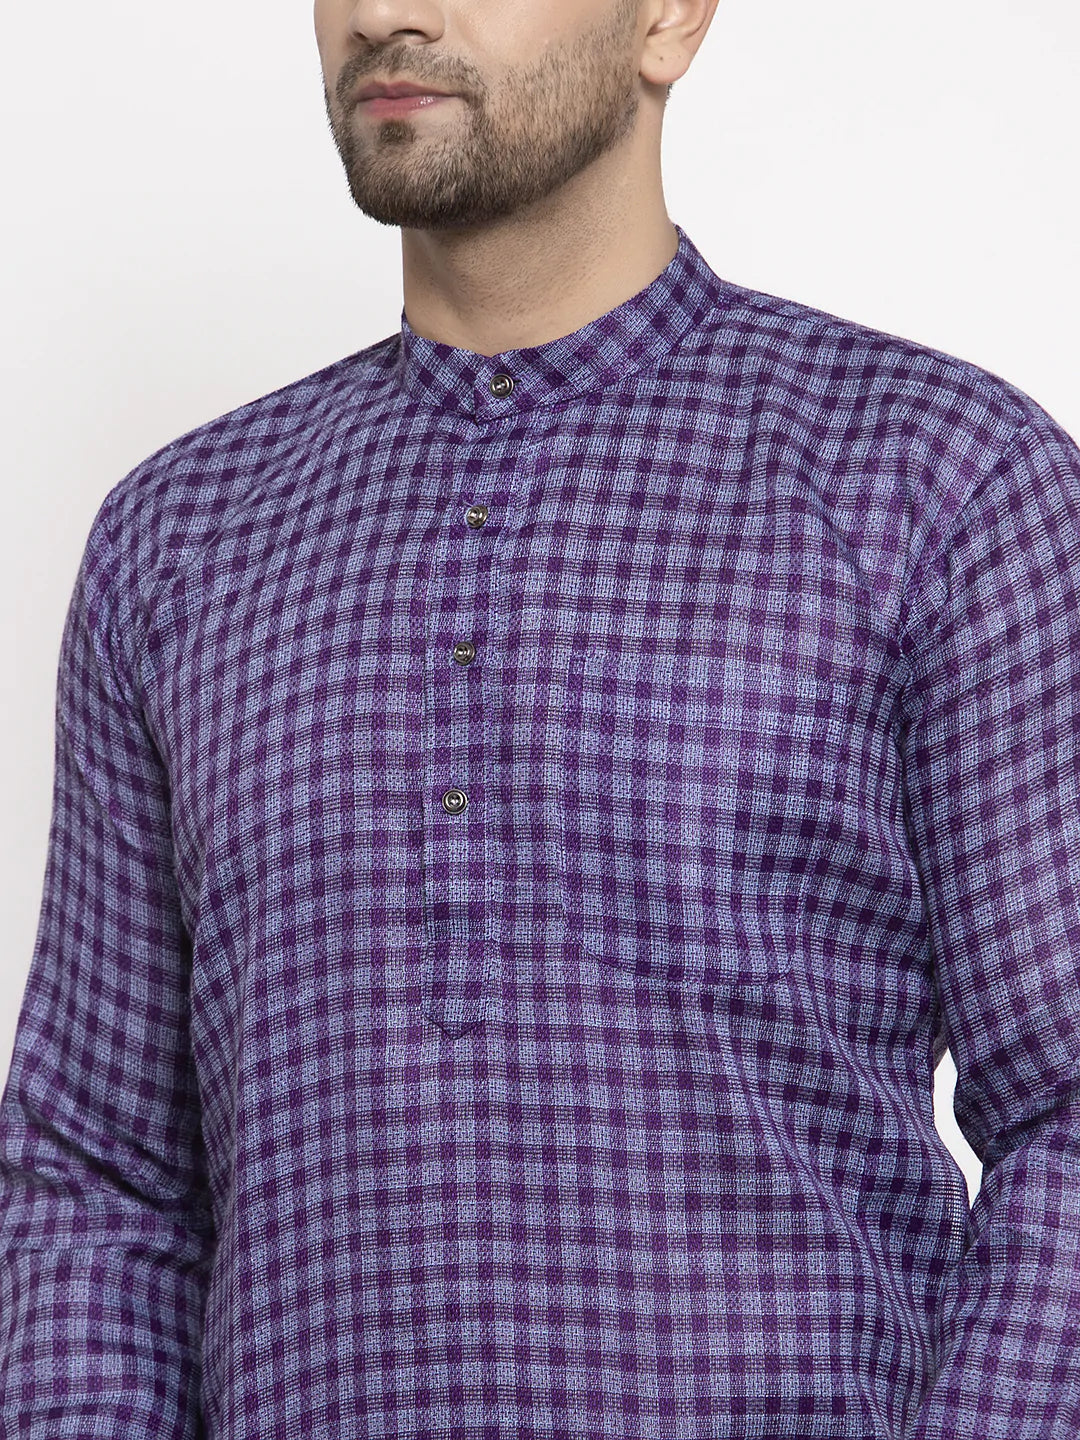 Jompers Men's Purple Woven Kurta Payjama Sets ( JOKP 622 Purple )